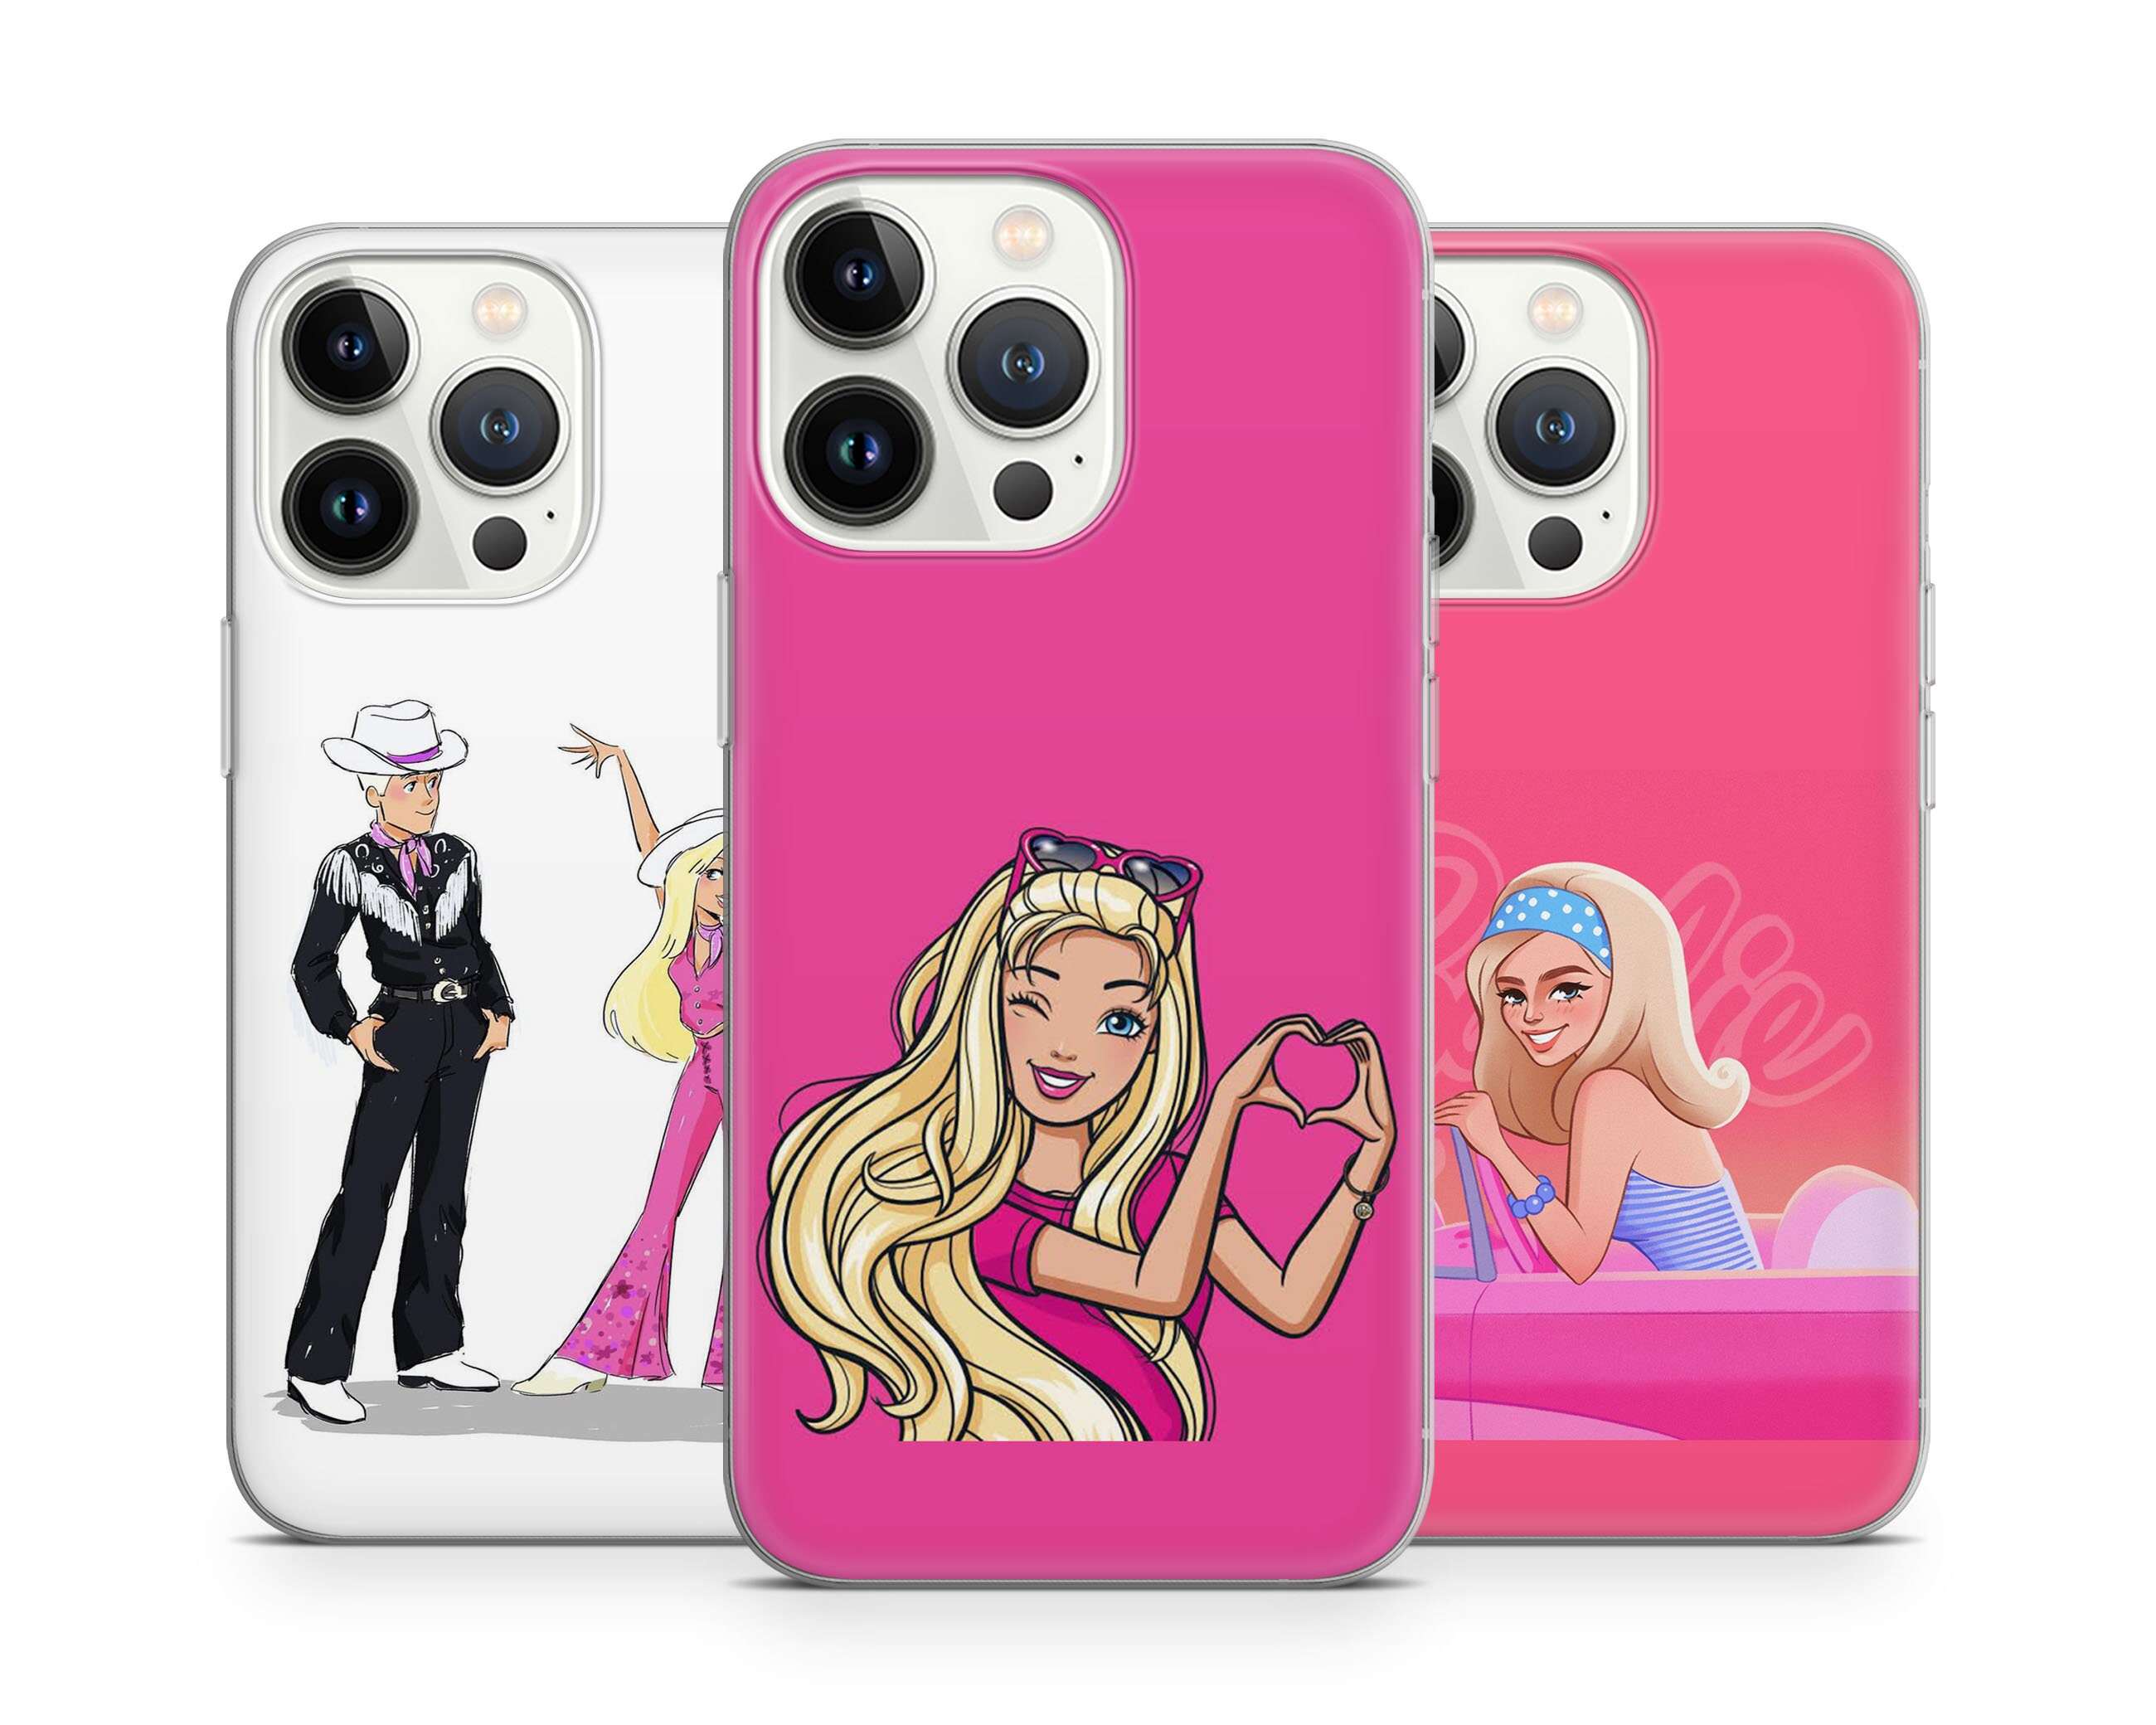 Barbie fan club | Samsung Galaxy Phone Case